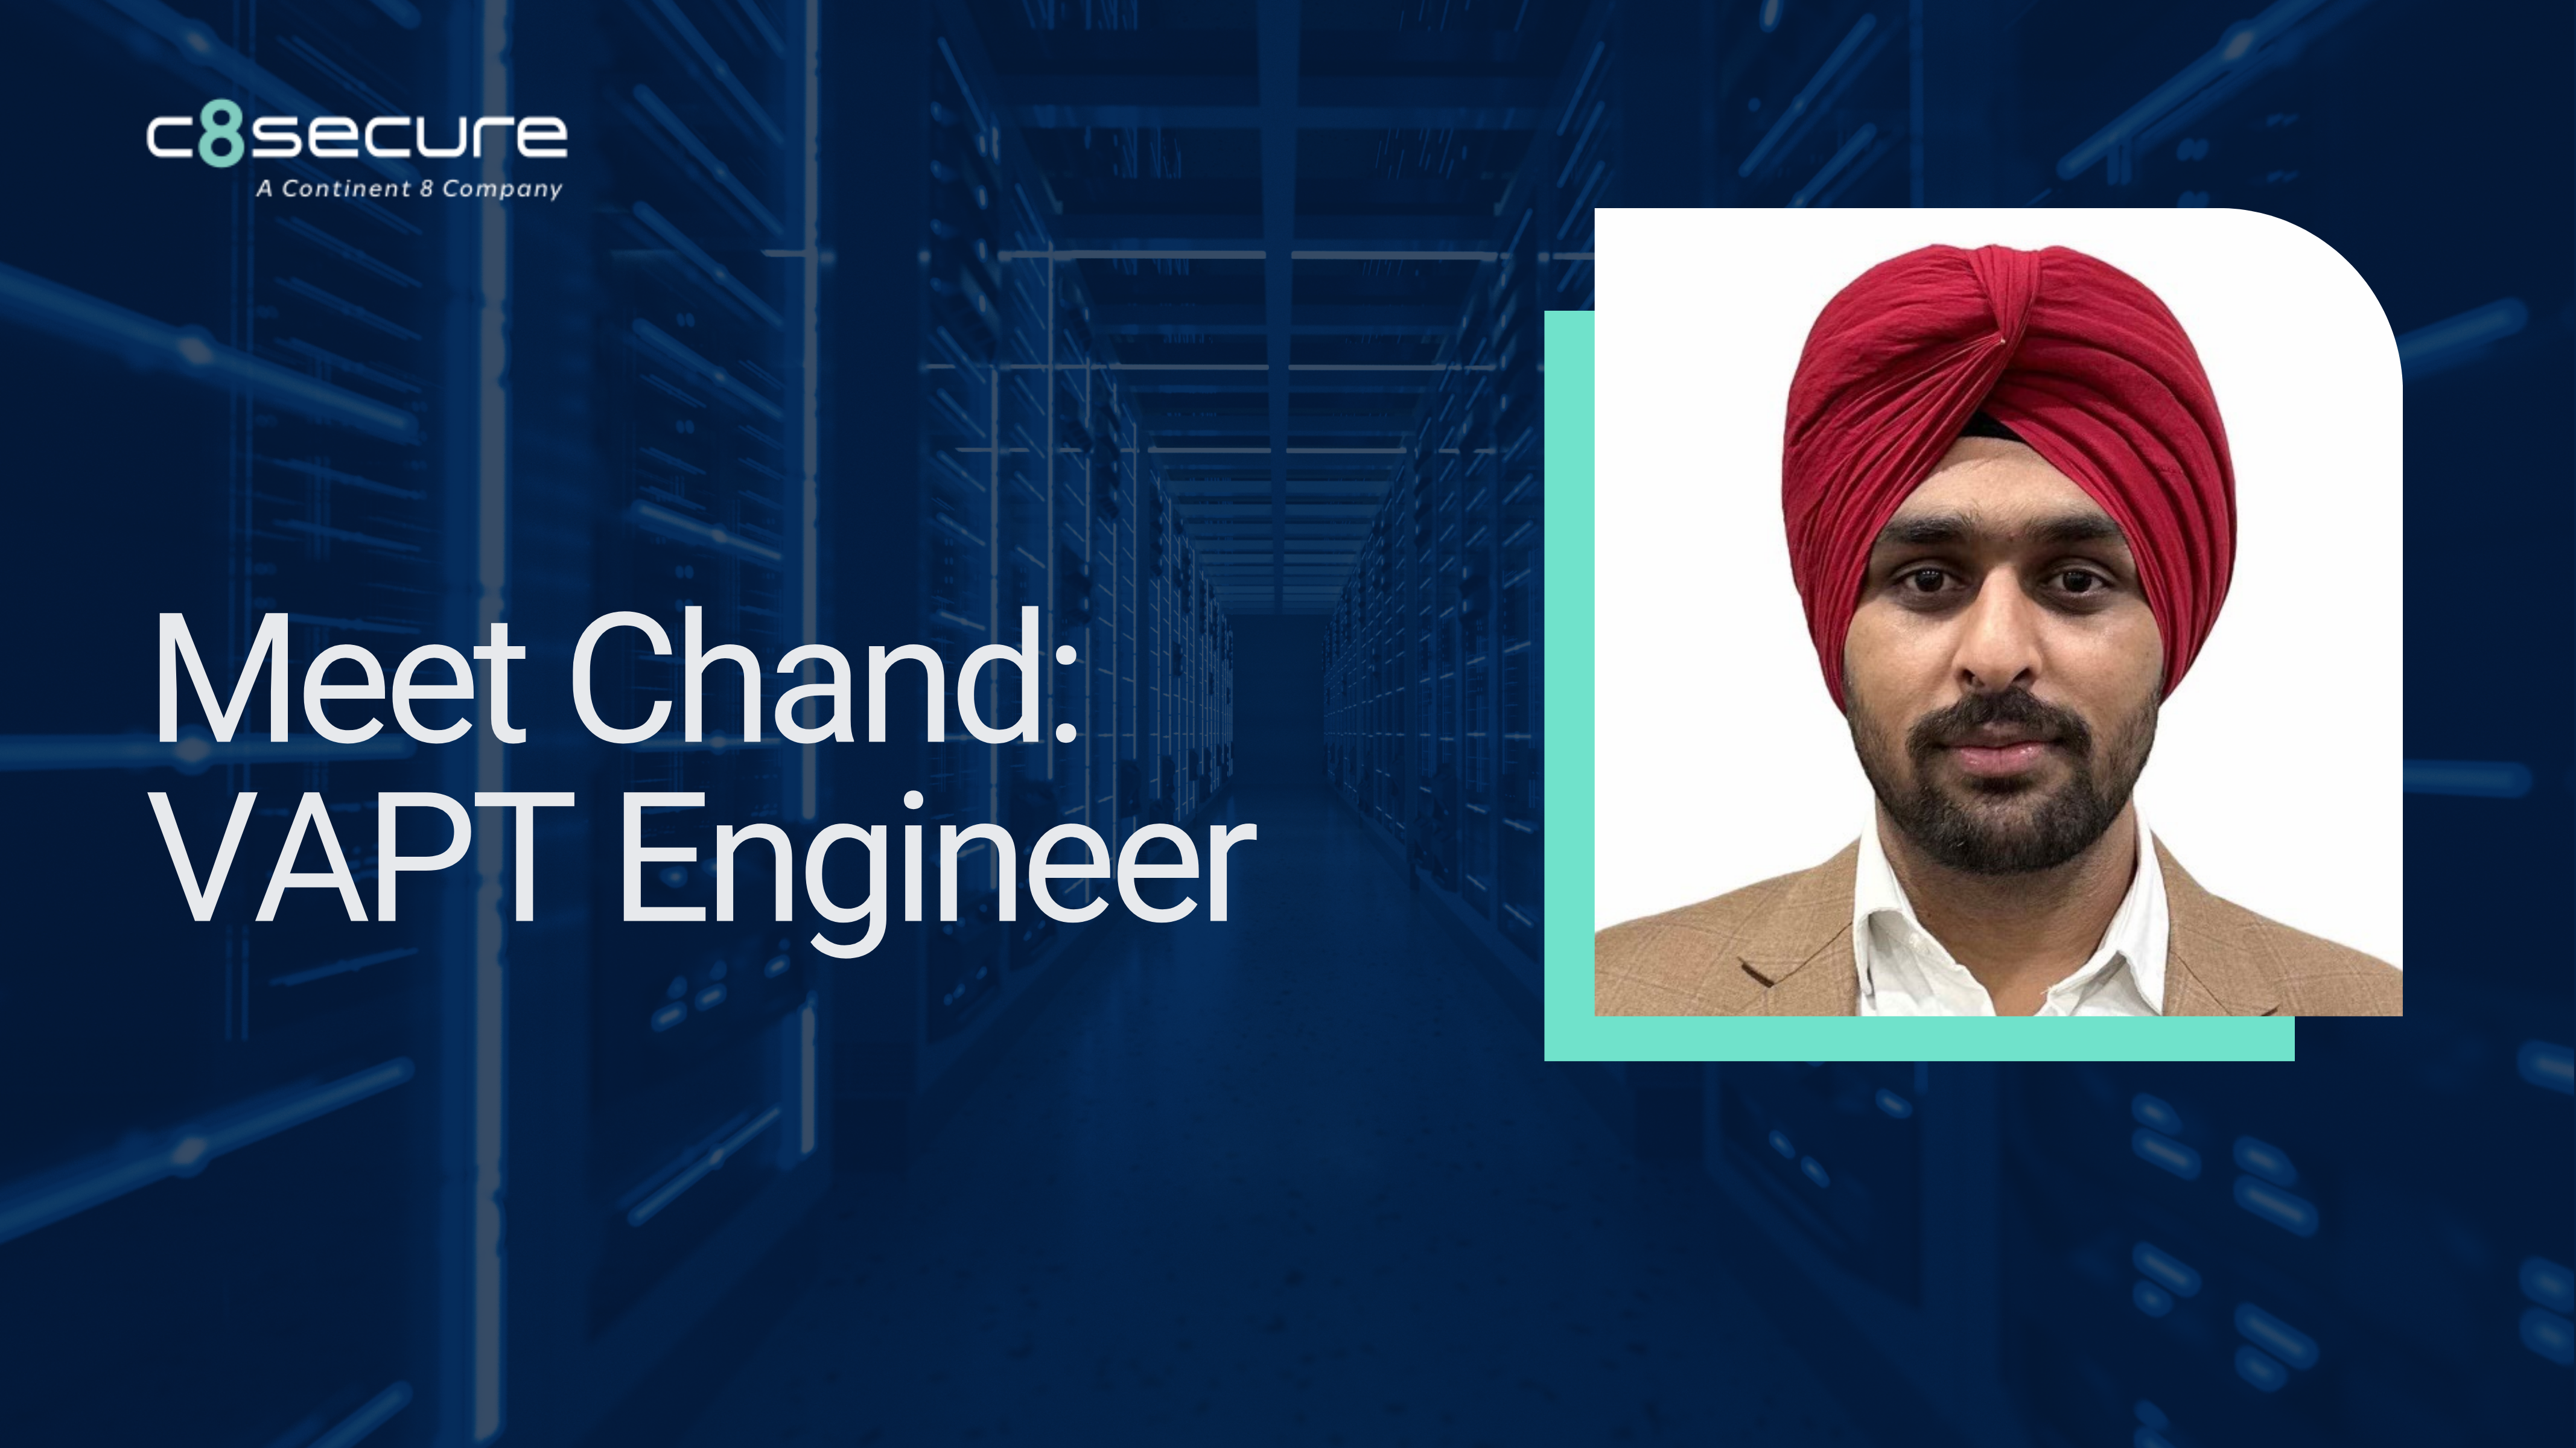 Chand VAPT Engineer